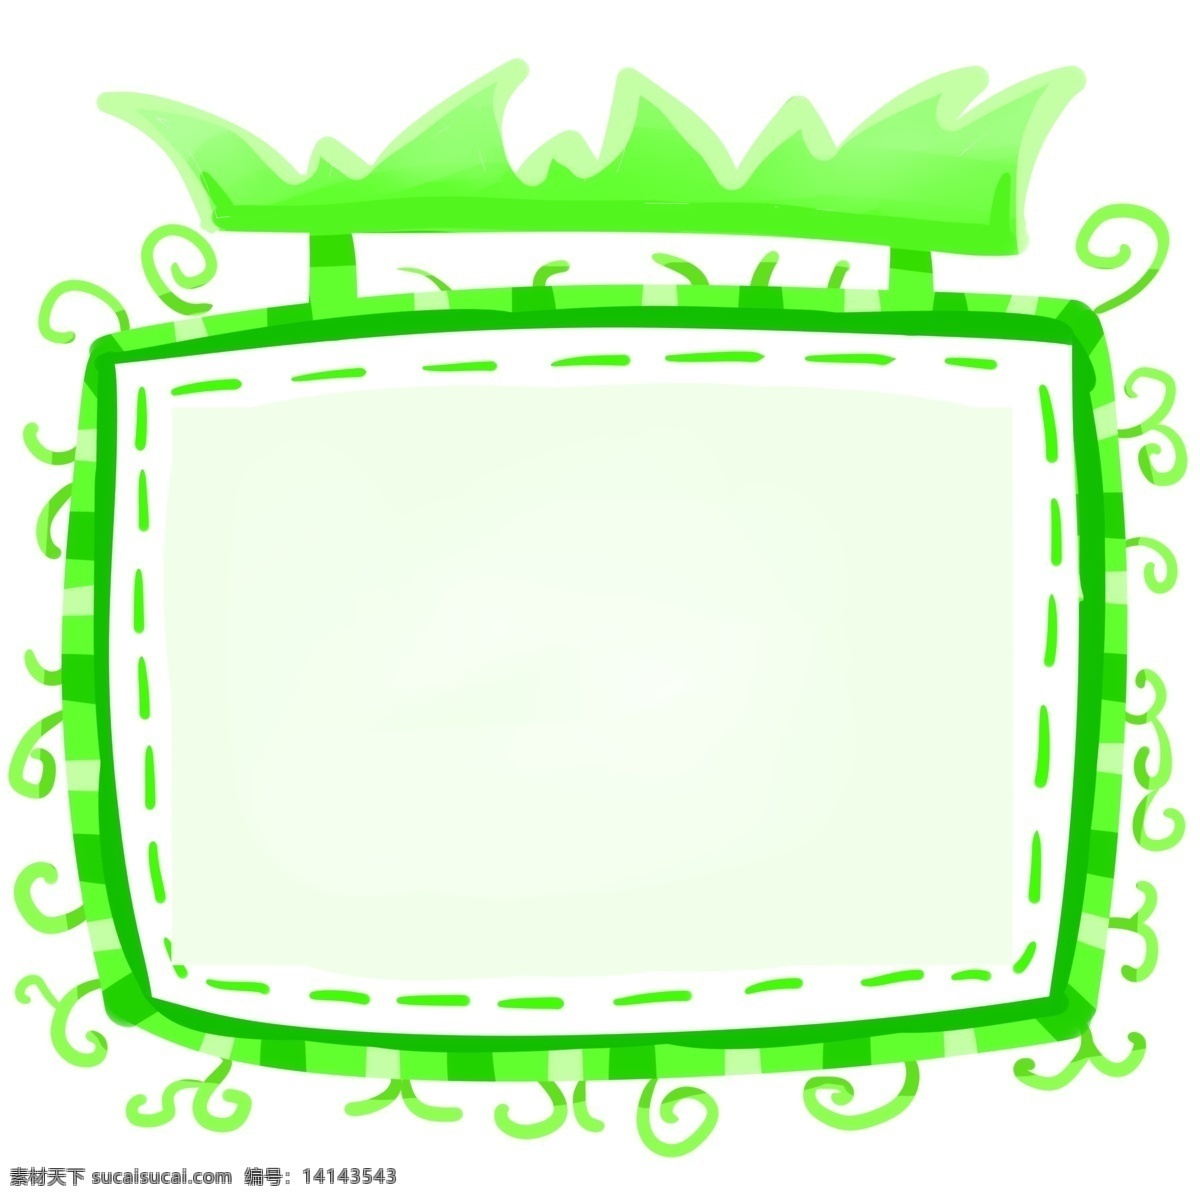 卡通 绿色 电视 边框 虚线边框 漂亮的边框 设计边框 简约的边框 美丽的边框 好看的边框 卡通边框